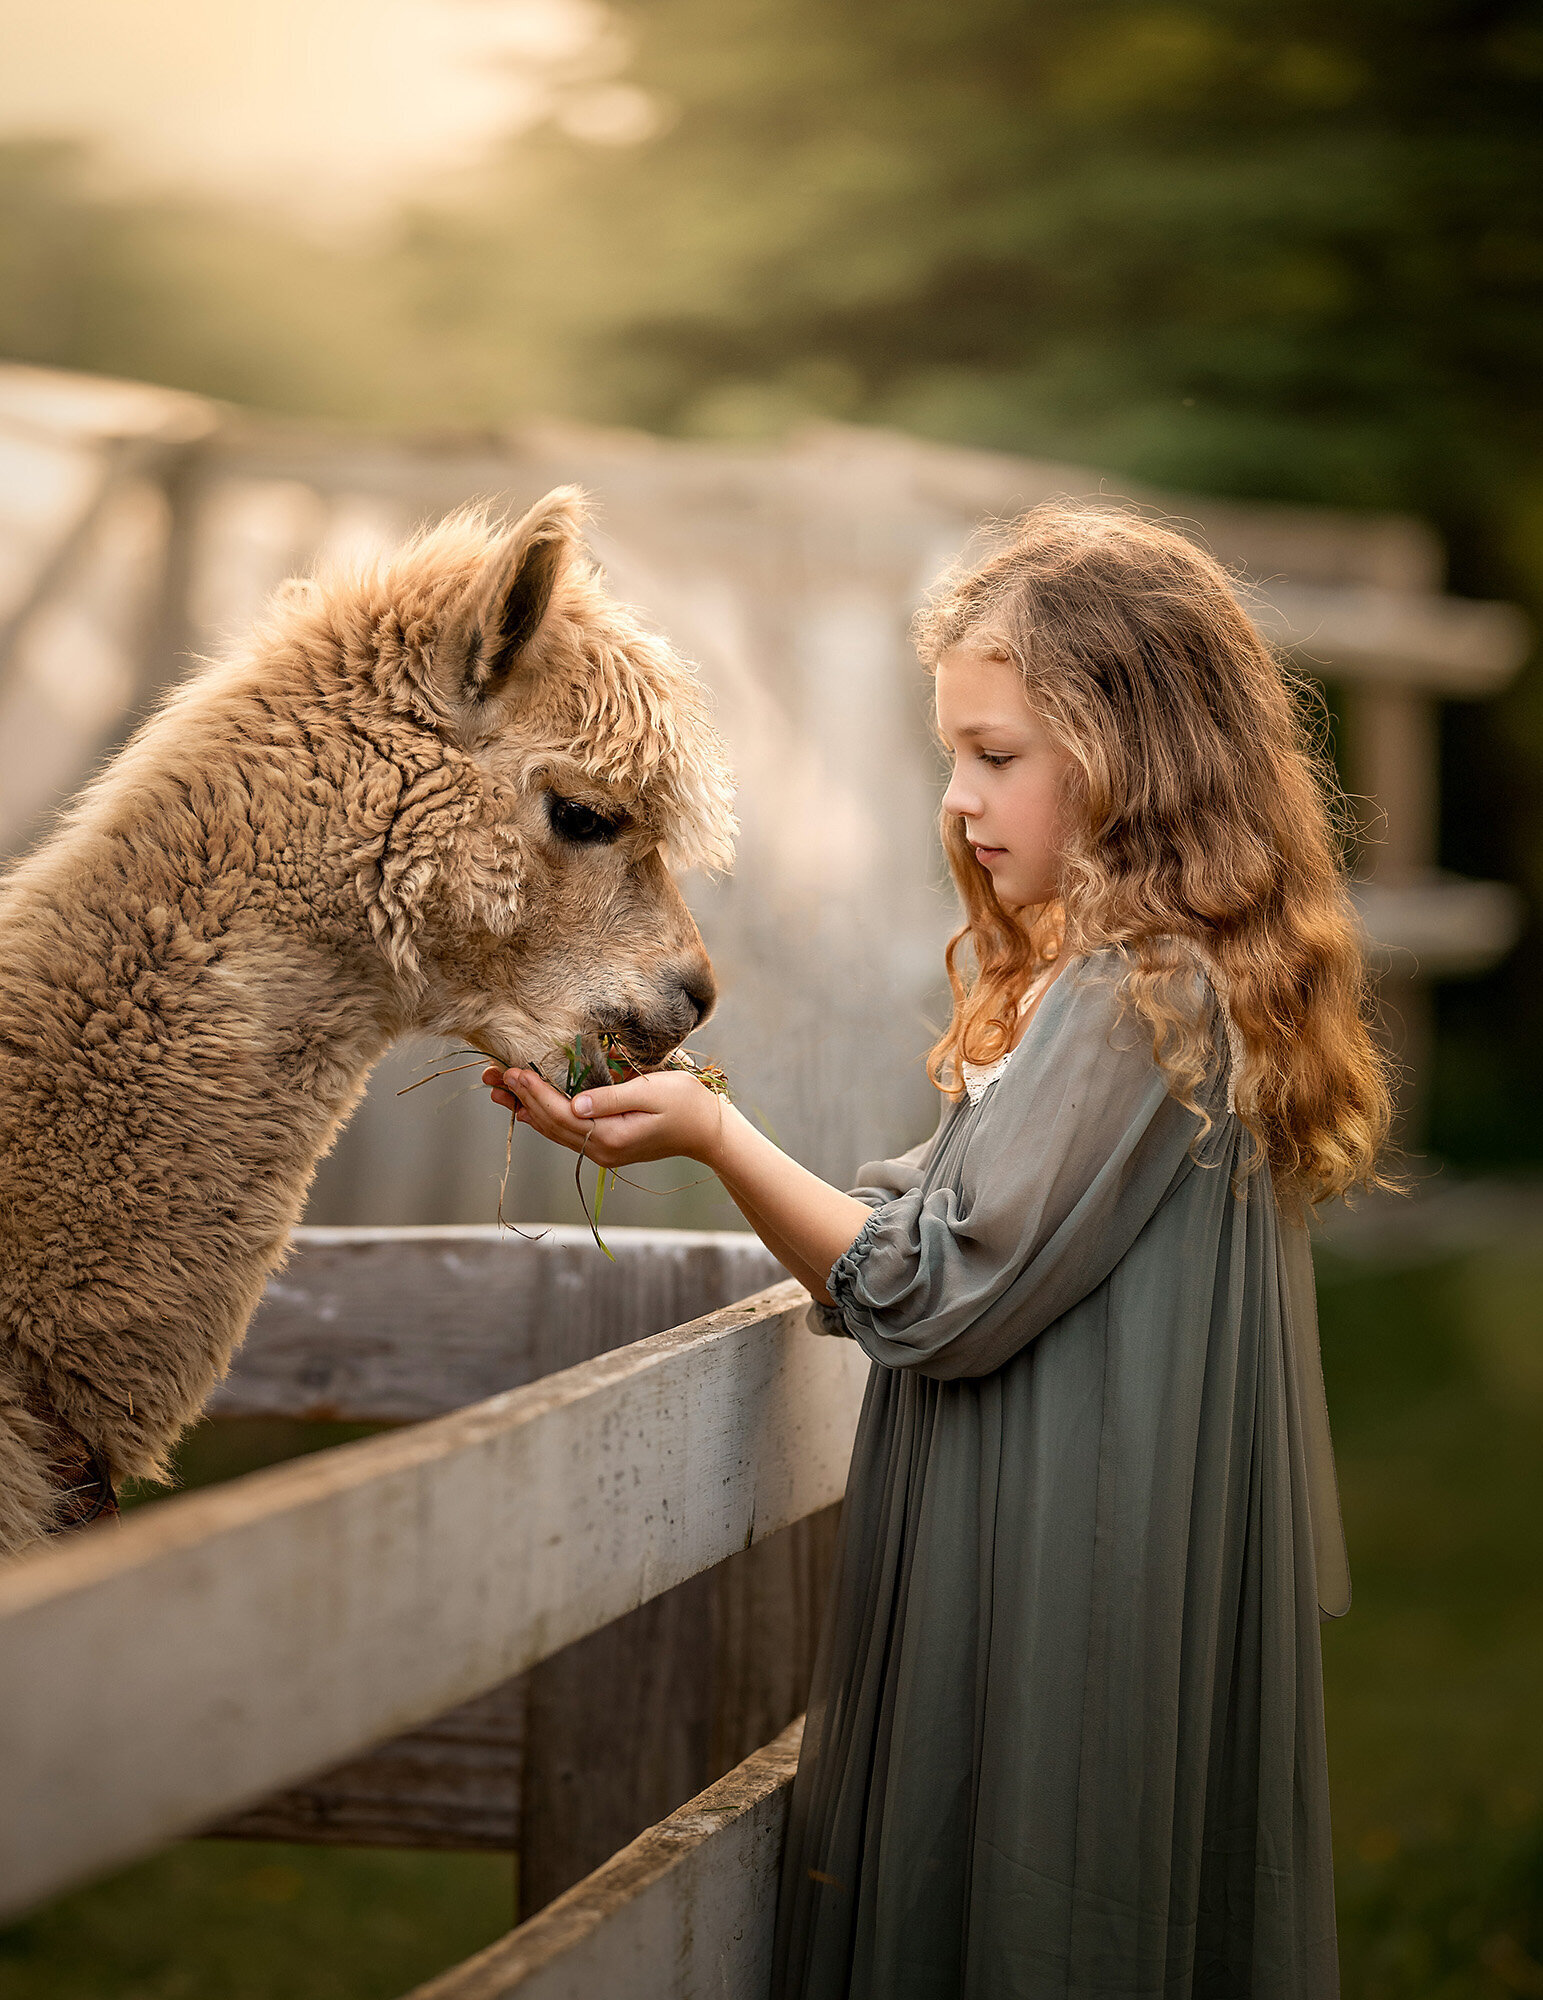 Child at petting farm photos in Norfolk by Iya Estrellado